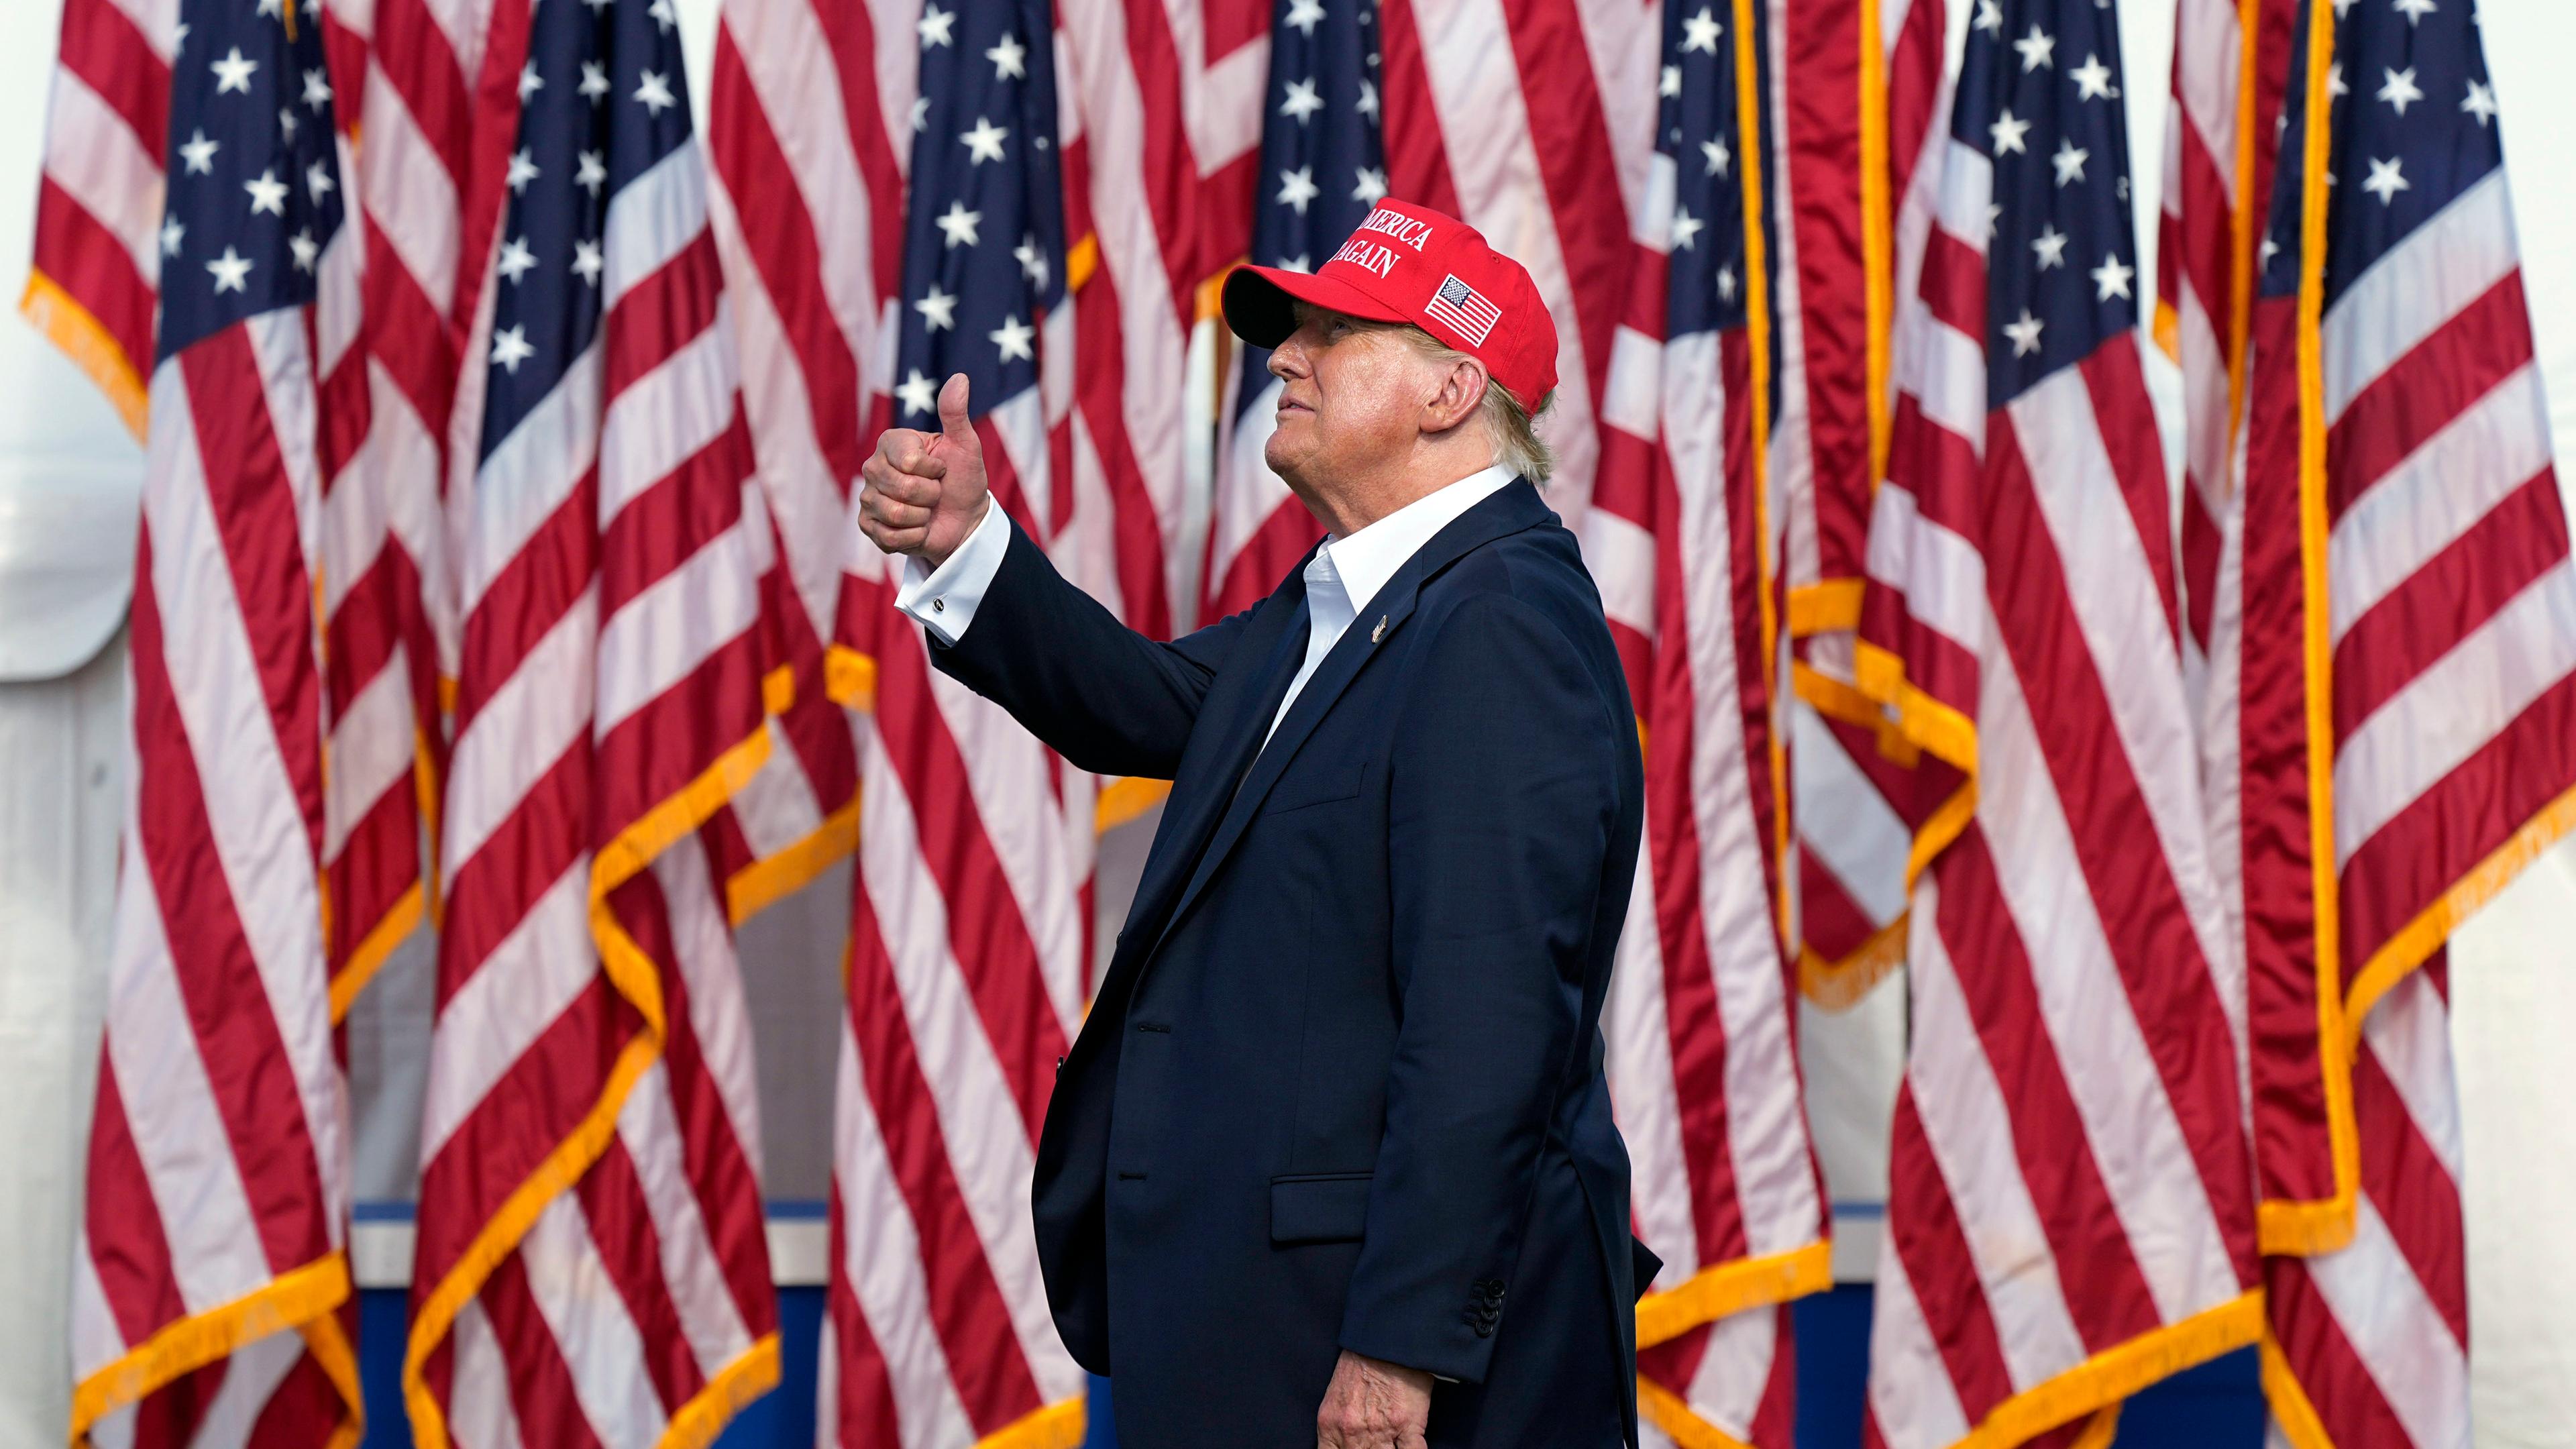 Donald Trump steht vor zahlreichen US-Flaggen